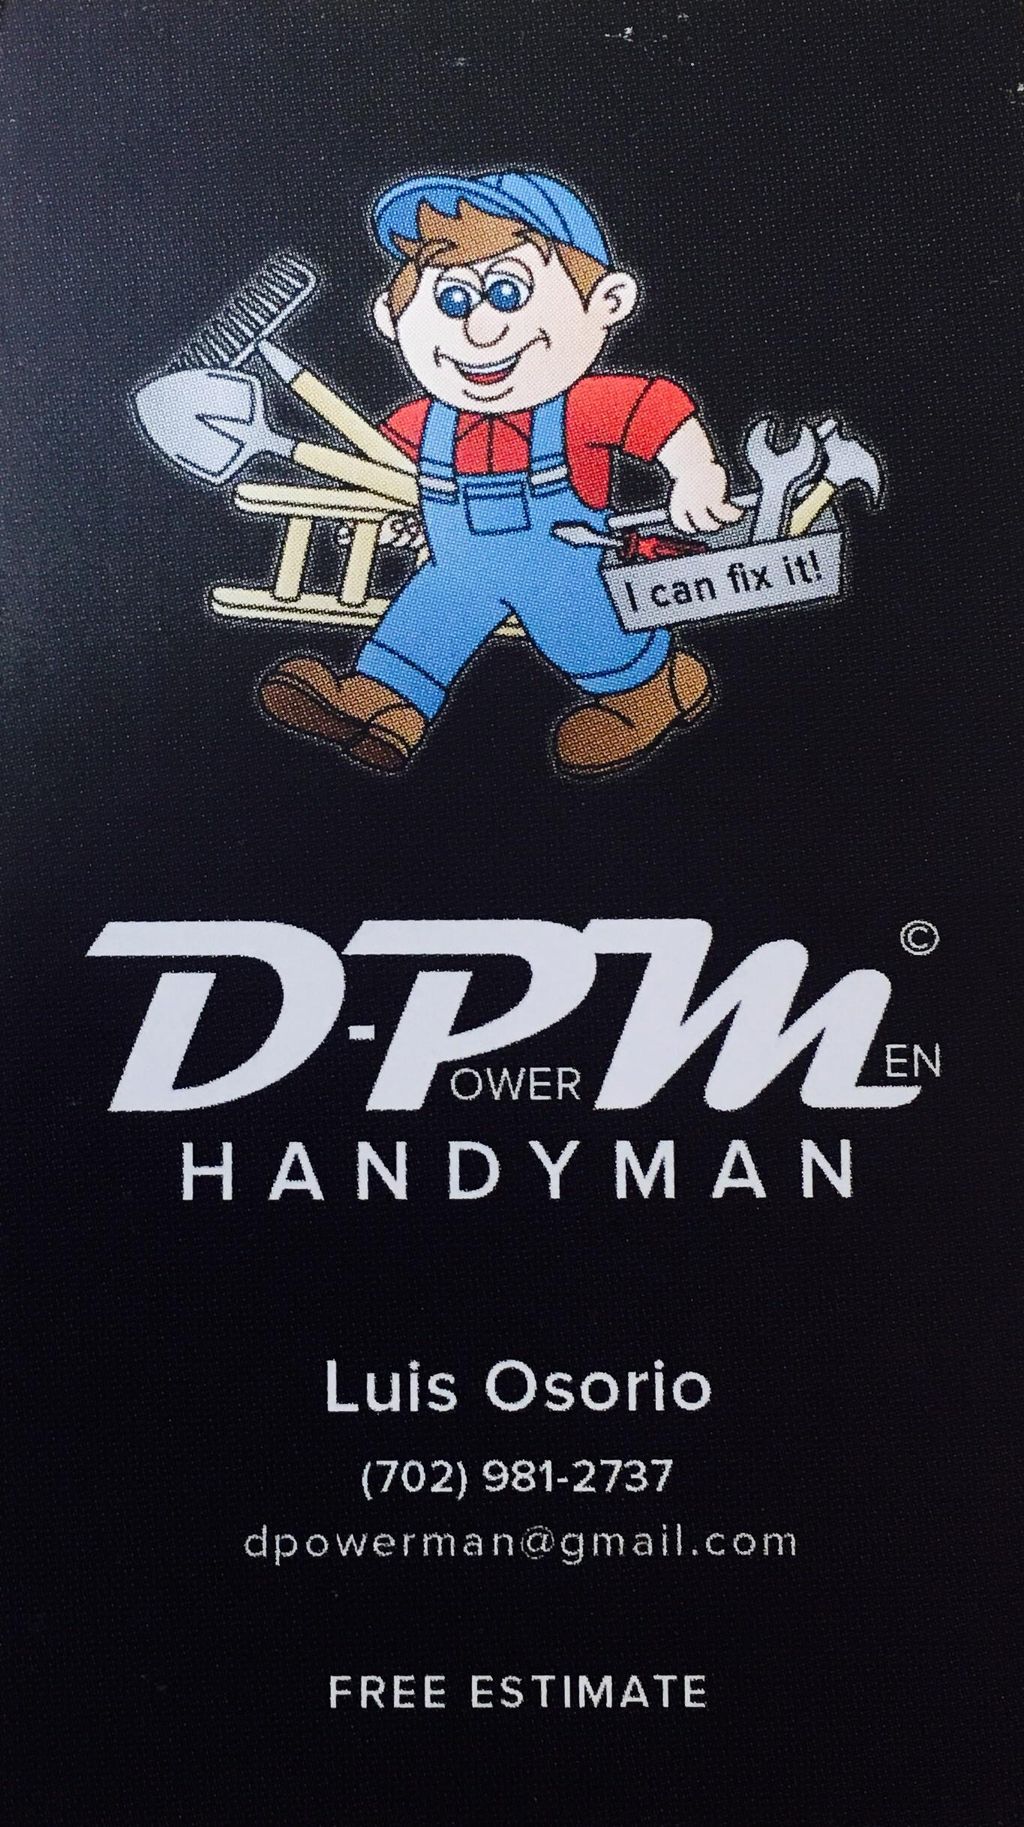 D-power man